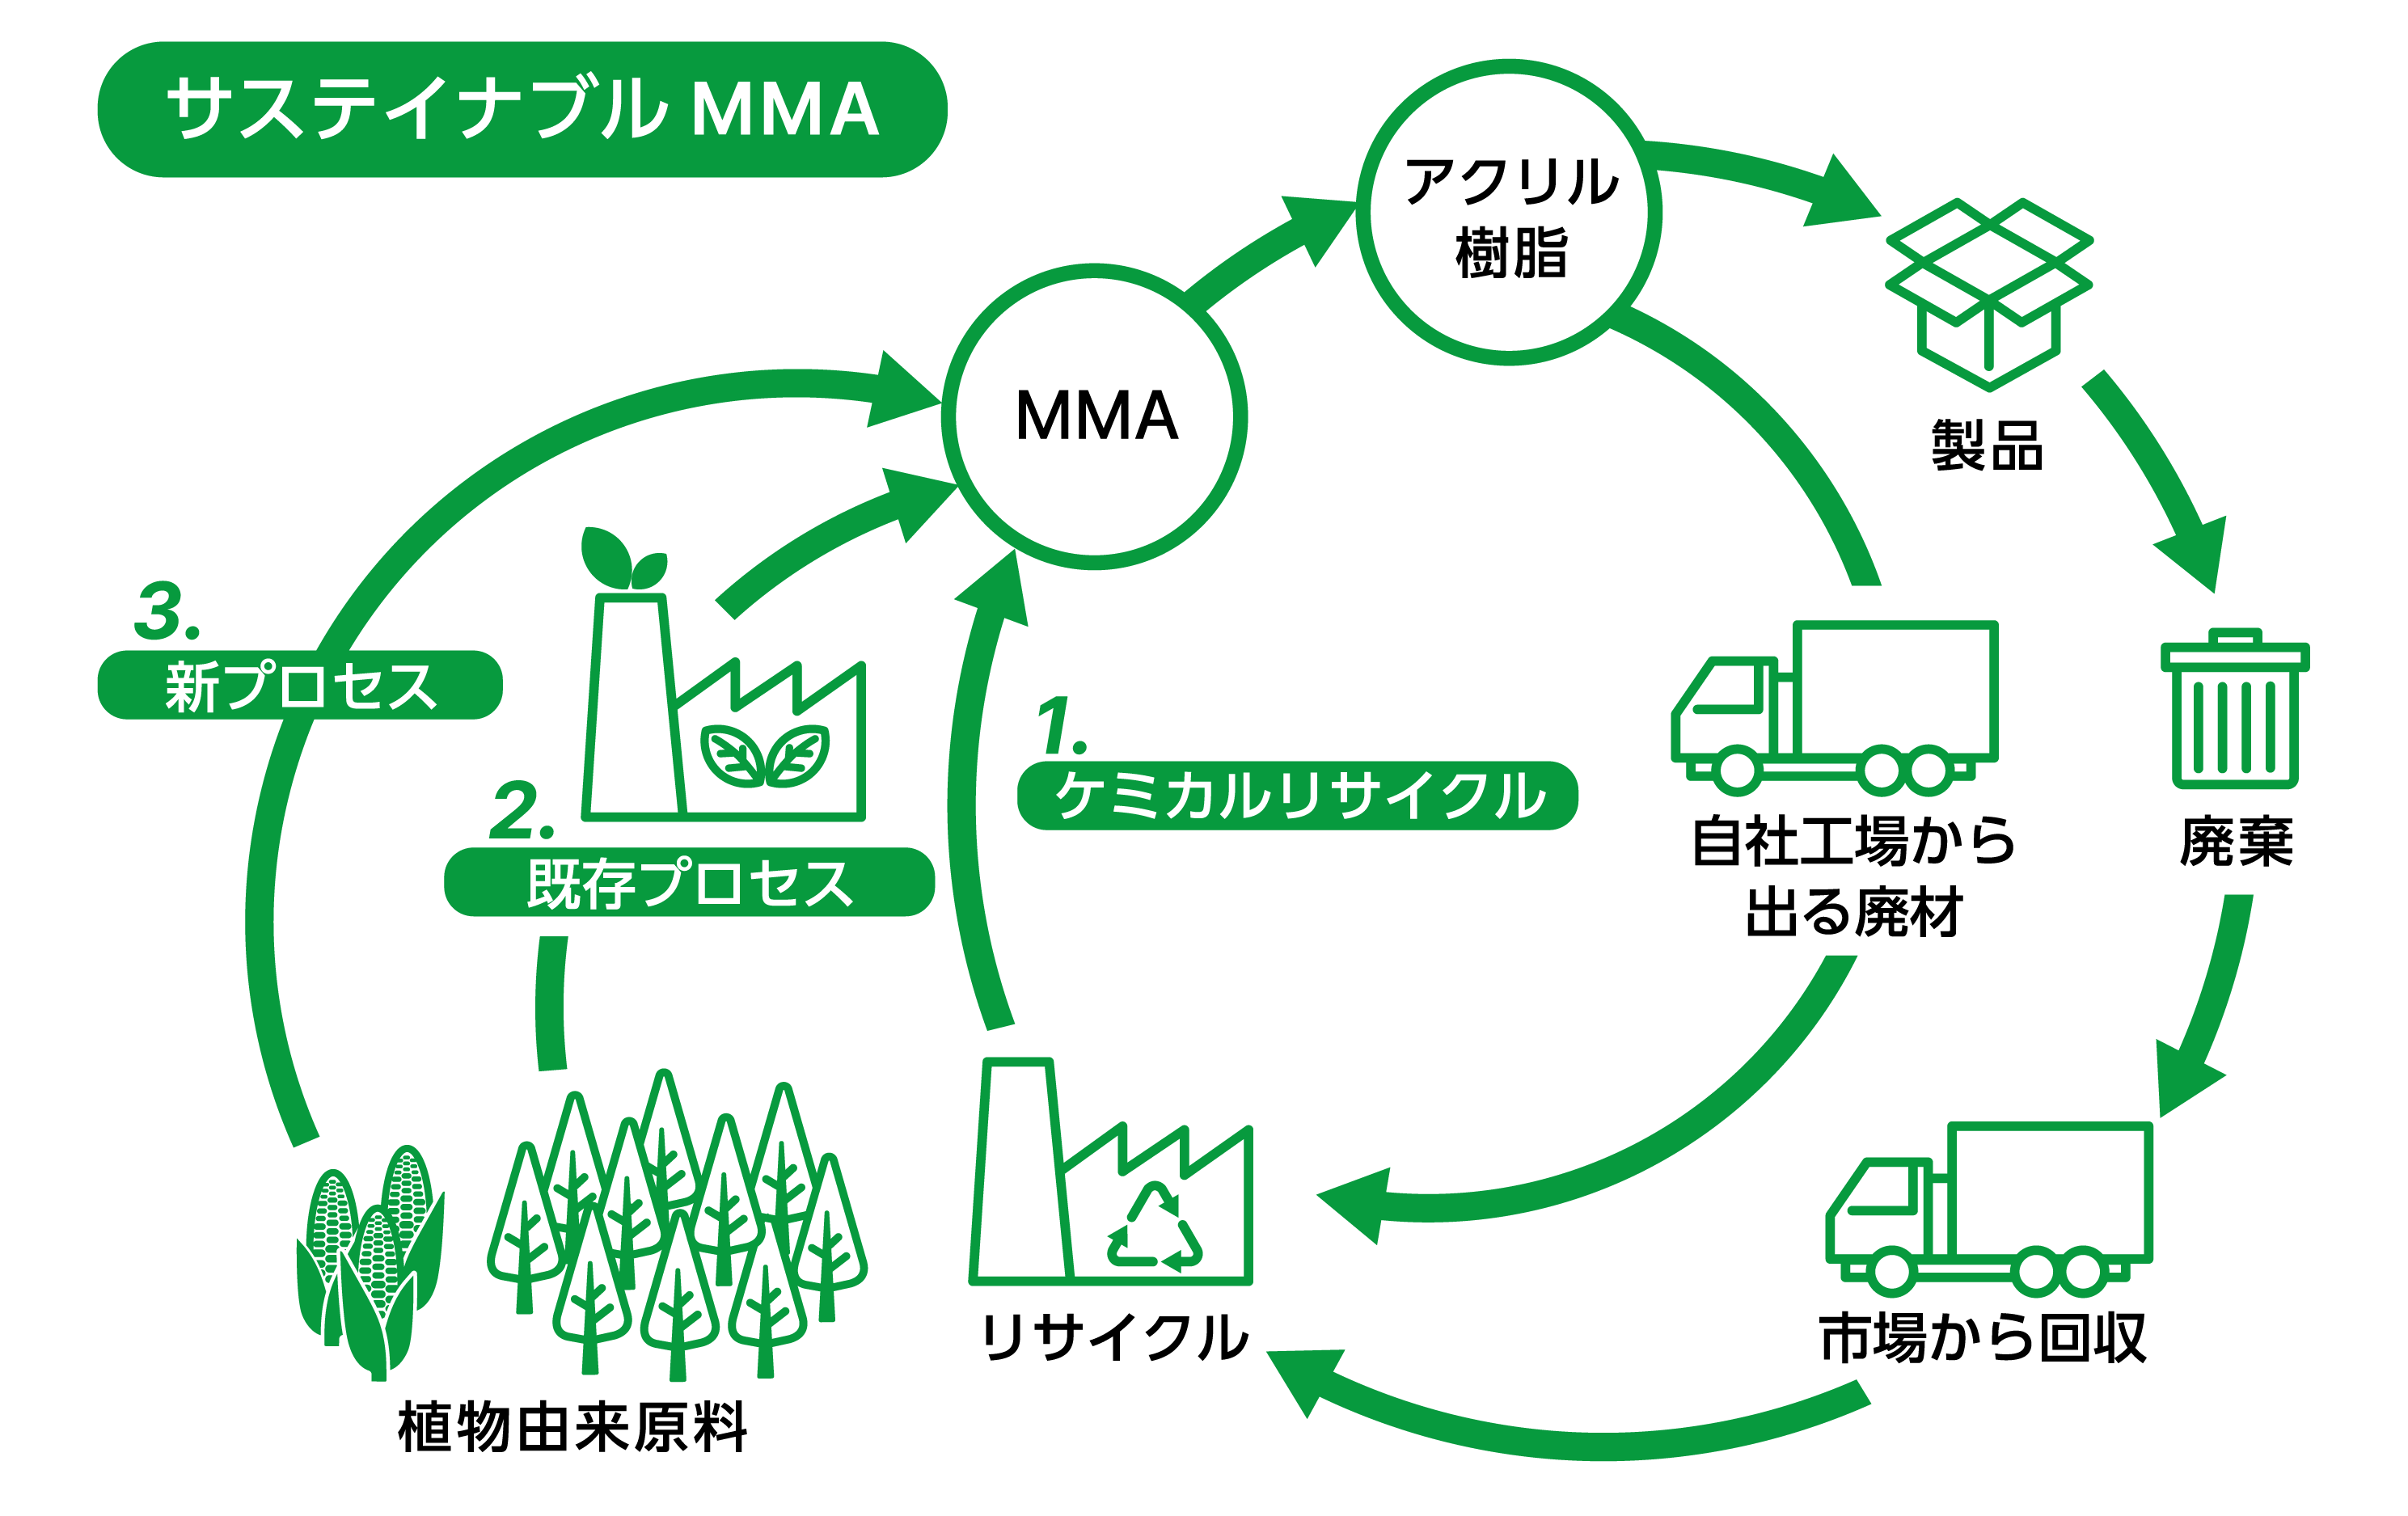 サステイナブルMMAの概念図。1.使用済みアクリル樹脂のケミカルリサイクル、2.既存プロセスへの植物由来原料適用、3.植物由来原料から発酵法によりMMAを直接製造するプロセス　の３種の方法により環境負荷を低減する